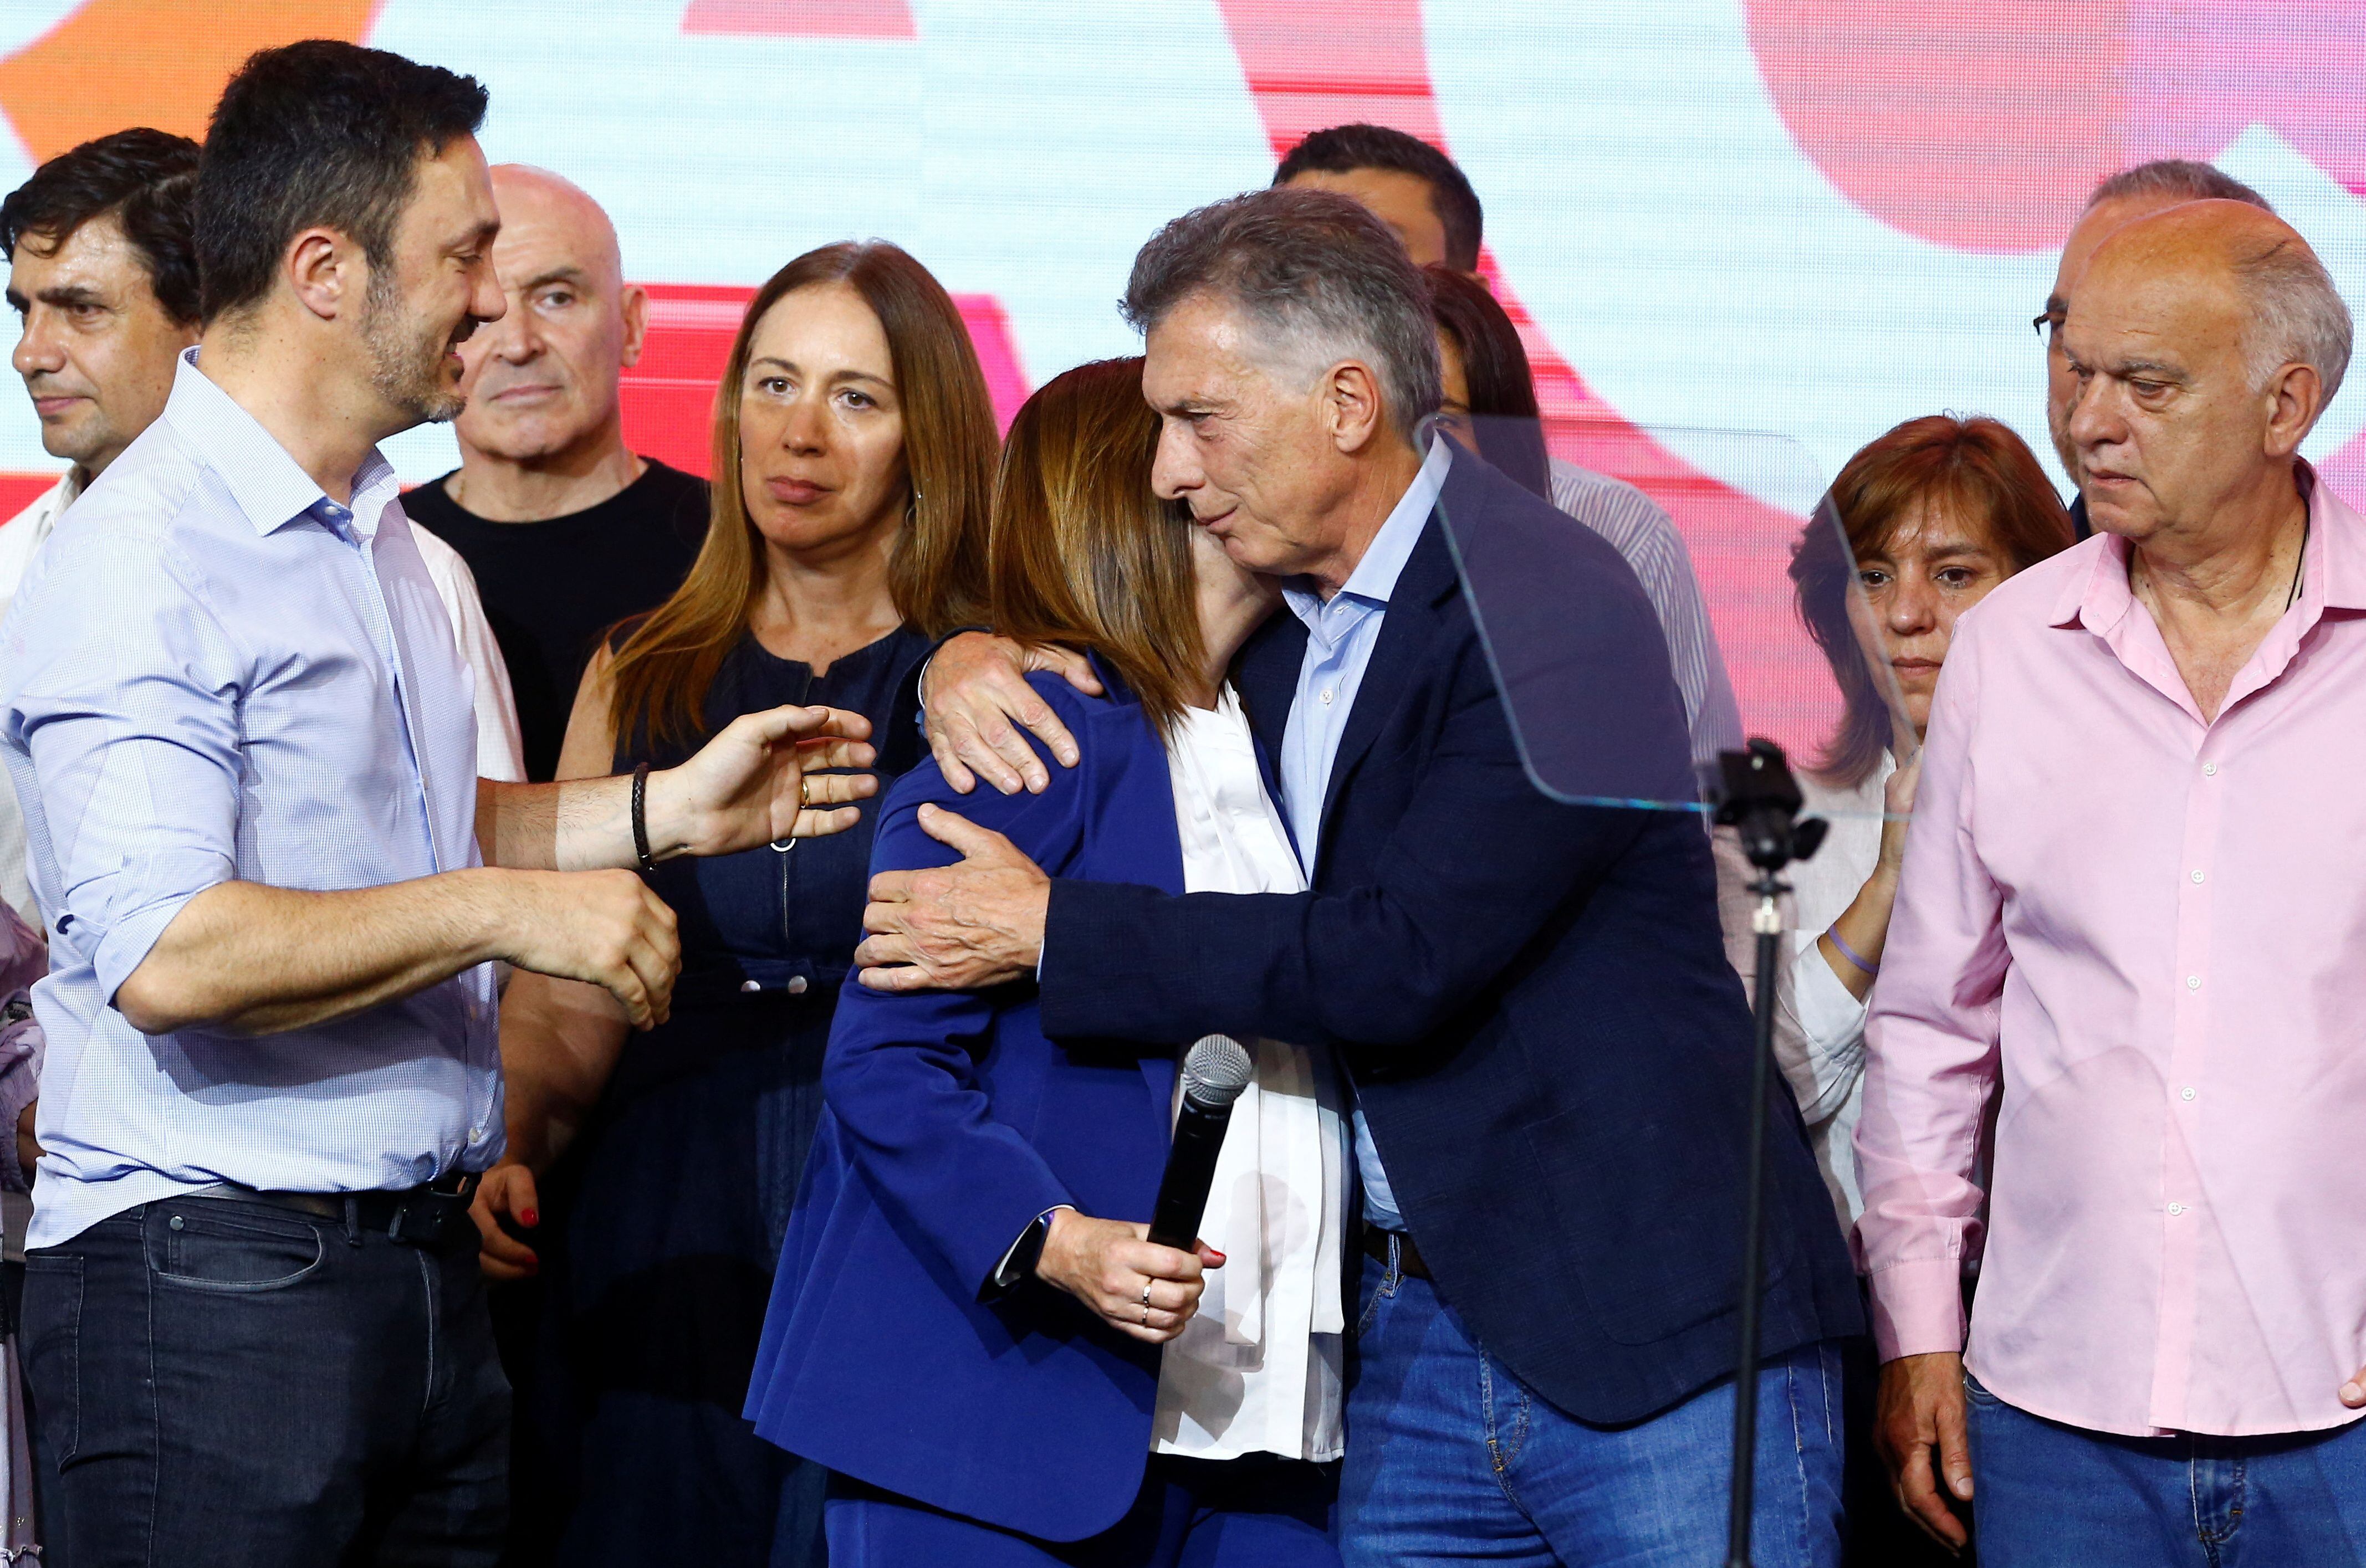 El abrazo de Mauricio Macri y Patricia Bullrich en la noche de las elecciones (Foto Reuters)
